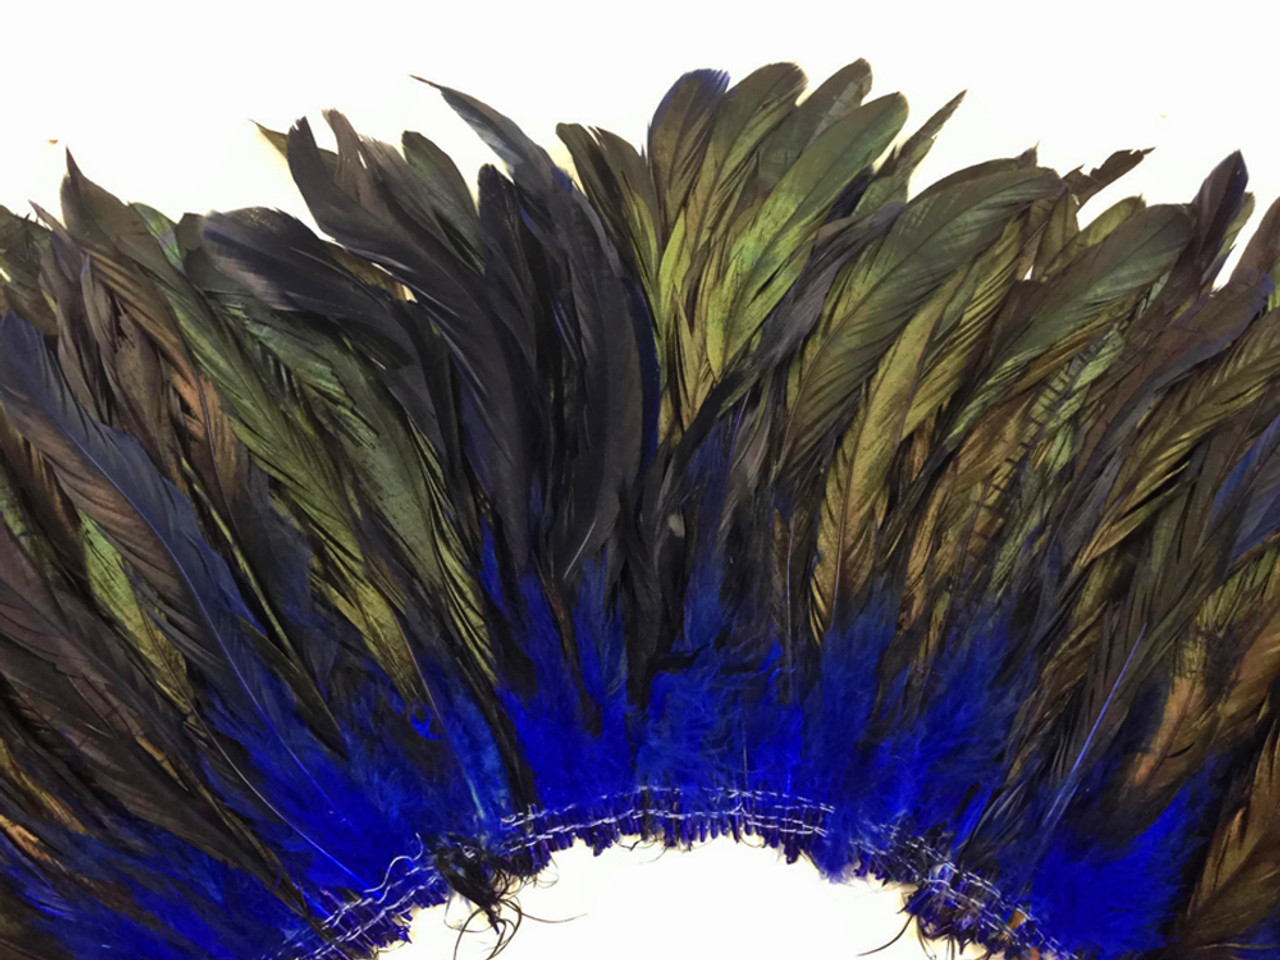 50 Pieces - 12-16 Black Ostrich Tail Centerpiece Costume Wholesale Feathers (Bulk)